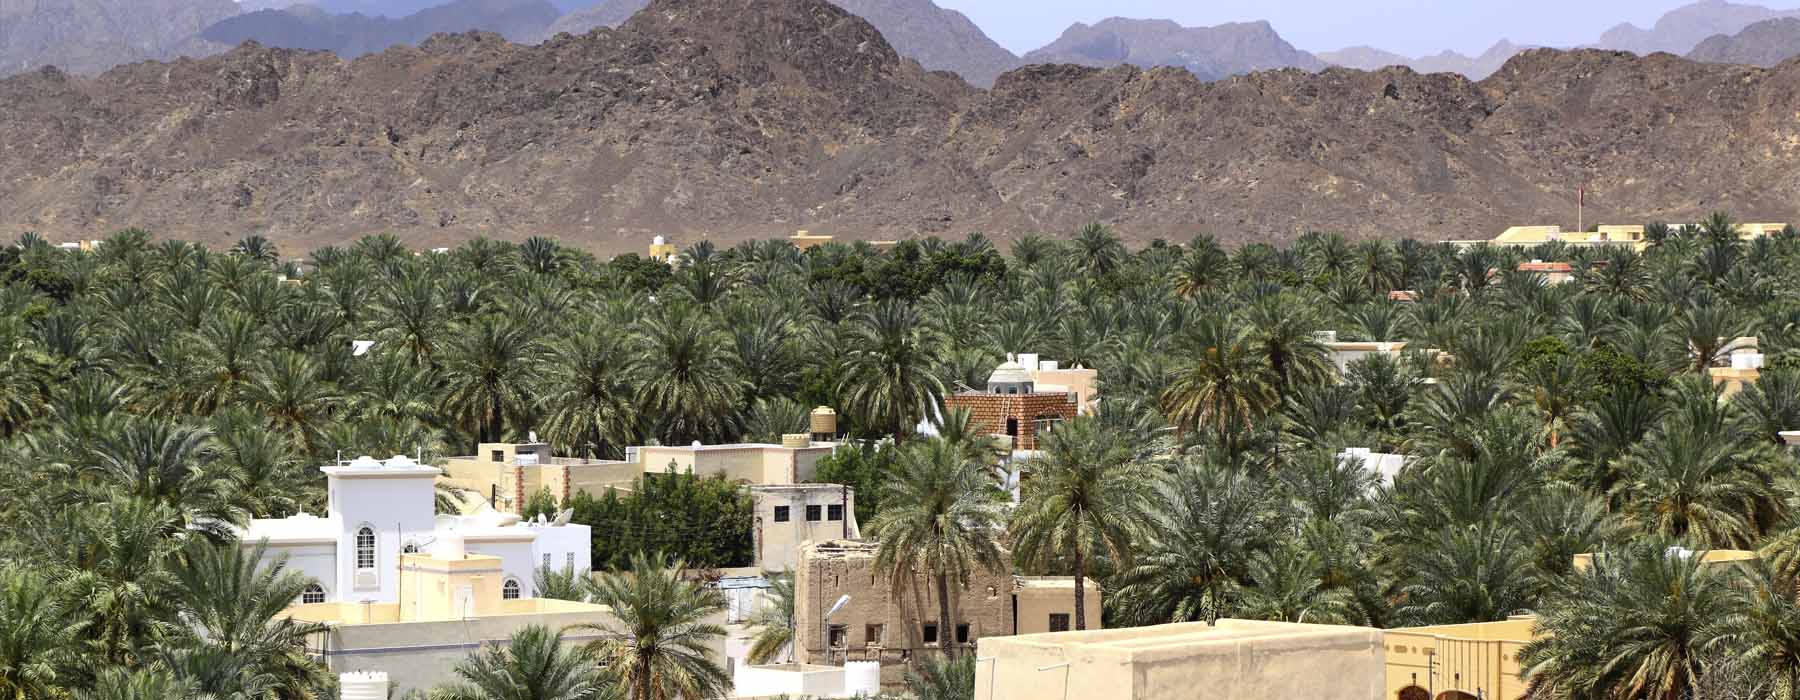 Oman<br class="hidden-md hidden-lg" /> Honeymoons